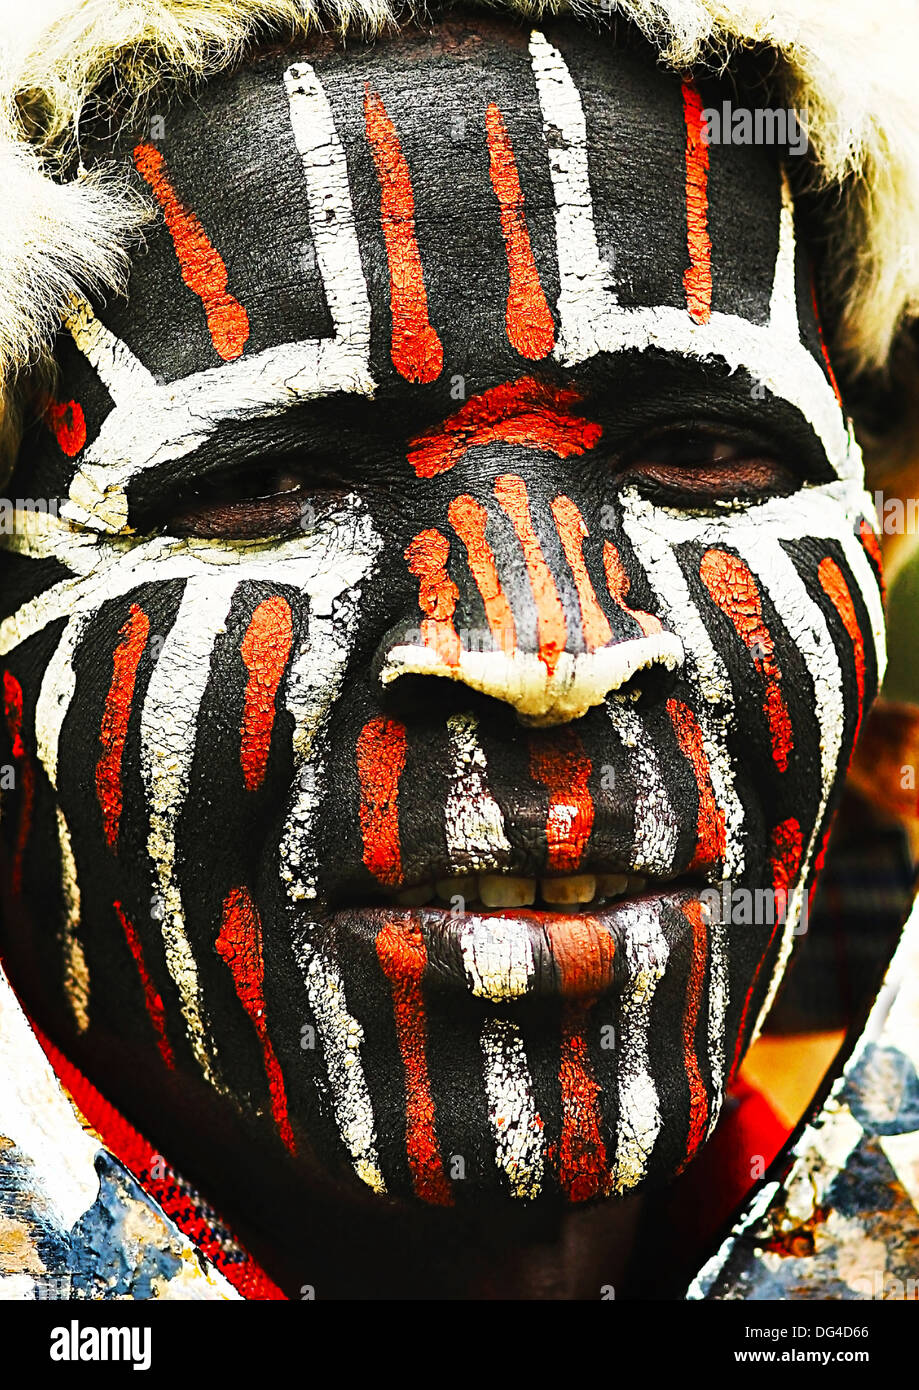 Afrique, KENYA, Nairobi, le 9 novembre : Portrait d'un guerrier Kenyan avec traditionnellement peints face Banque D'Images